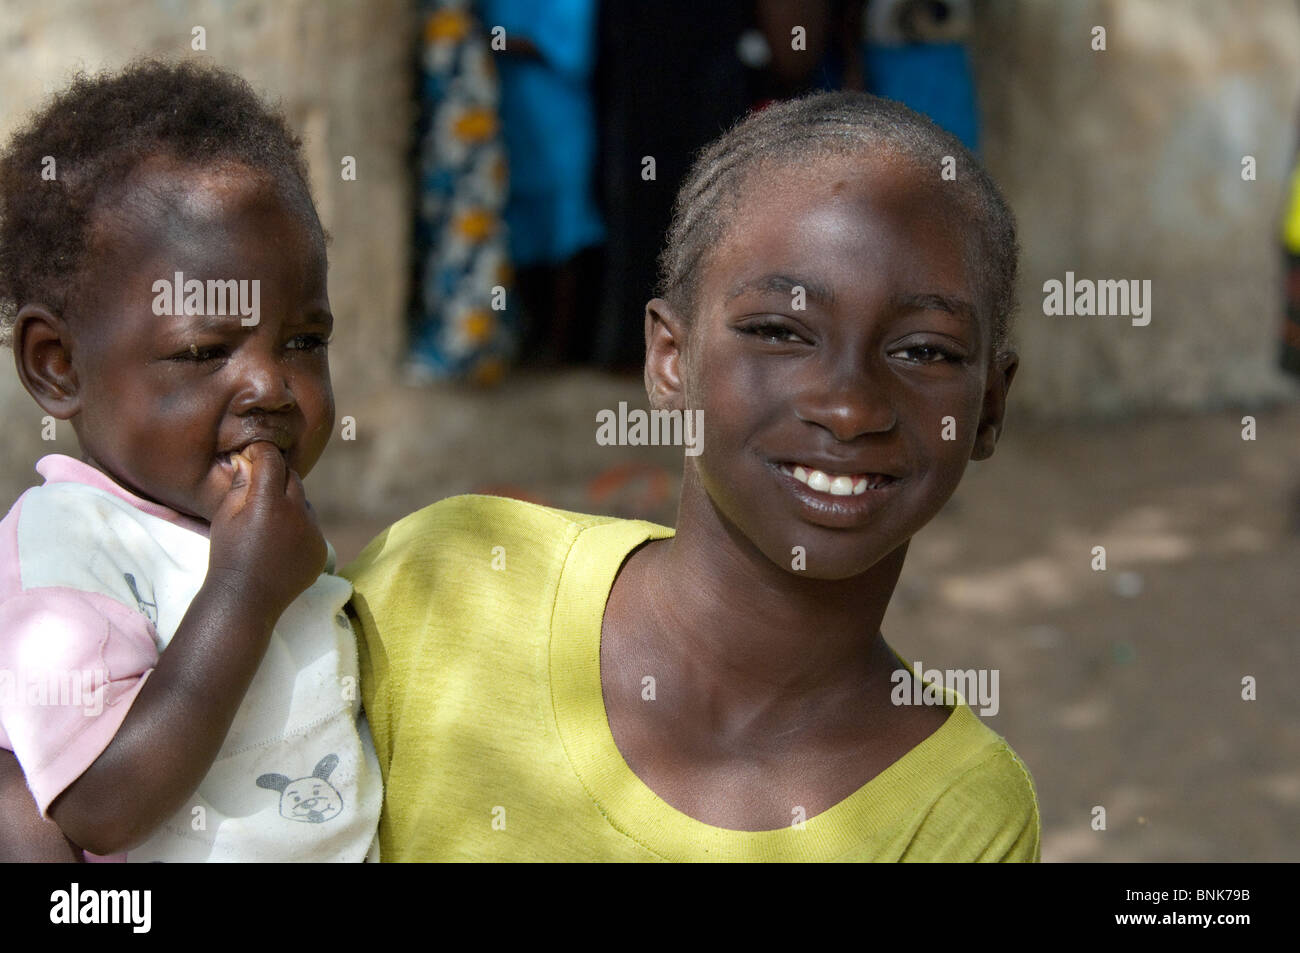 Afrique, Sénégal, Dakar. Village Wolof, le plus grand groupe ethnique du  Sénégal, principalement les agriculteurs et pêcheurs. Jeune fille avec bébé  Photo Stock - Alamy